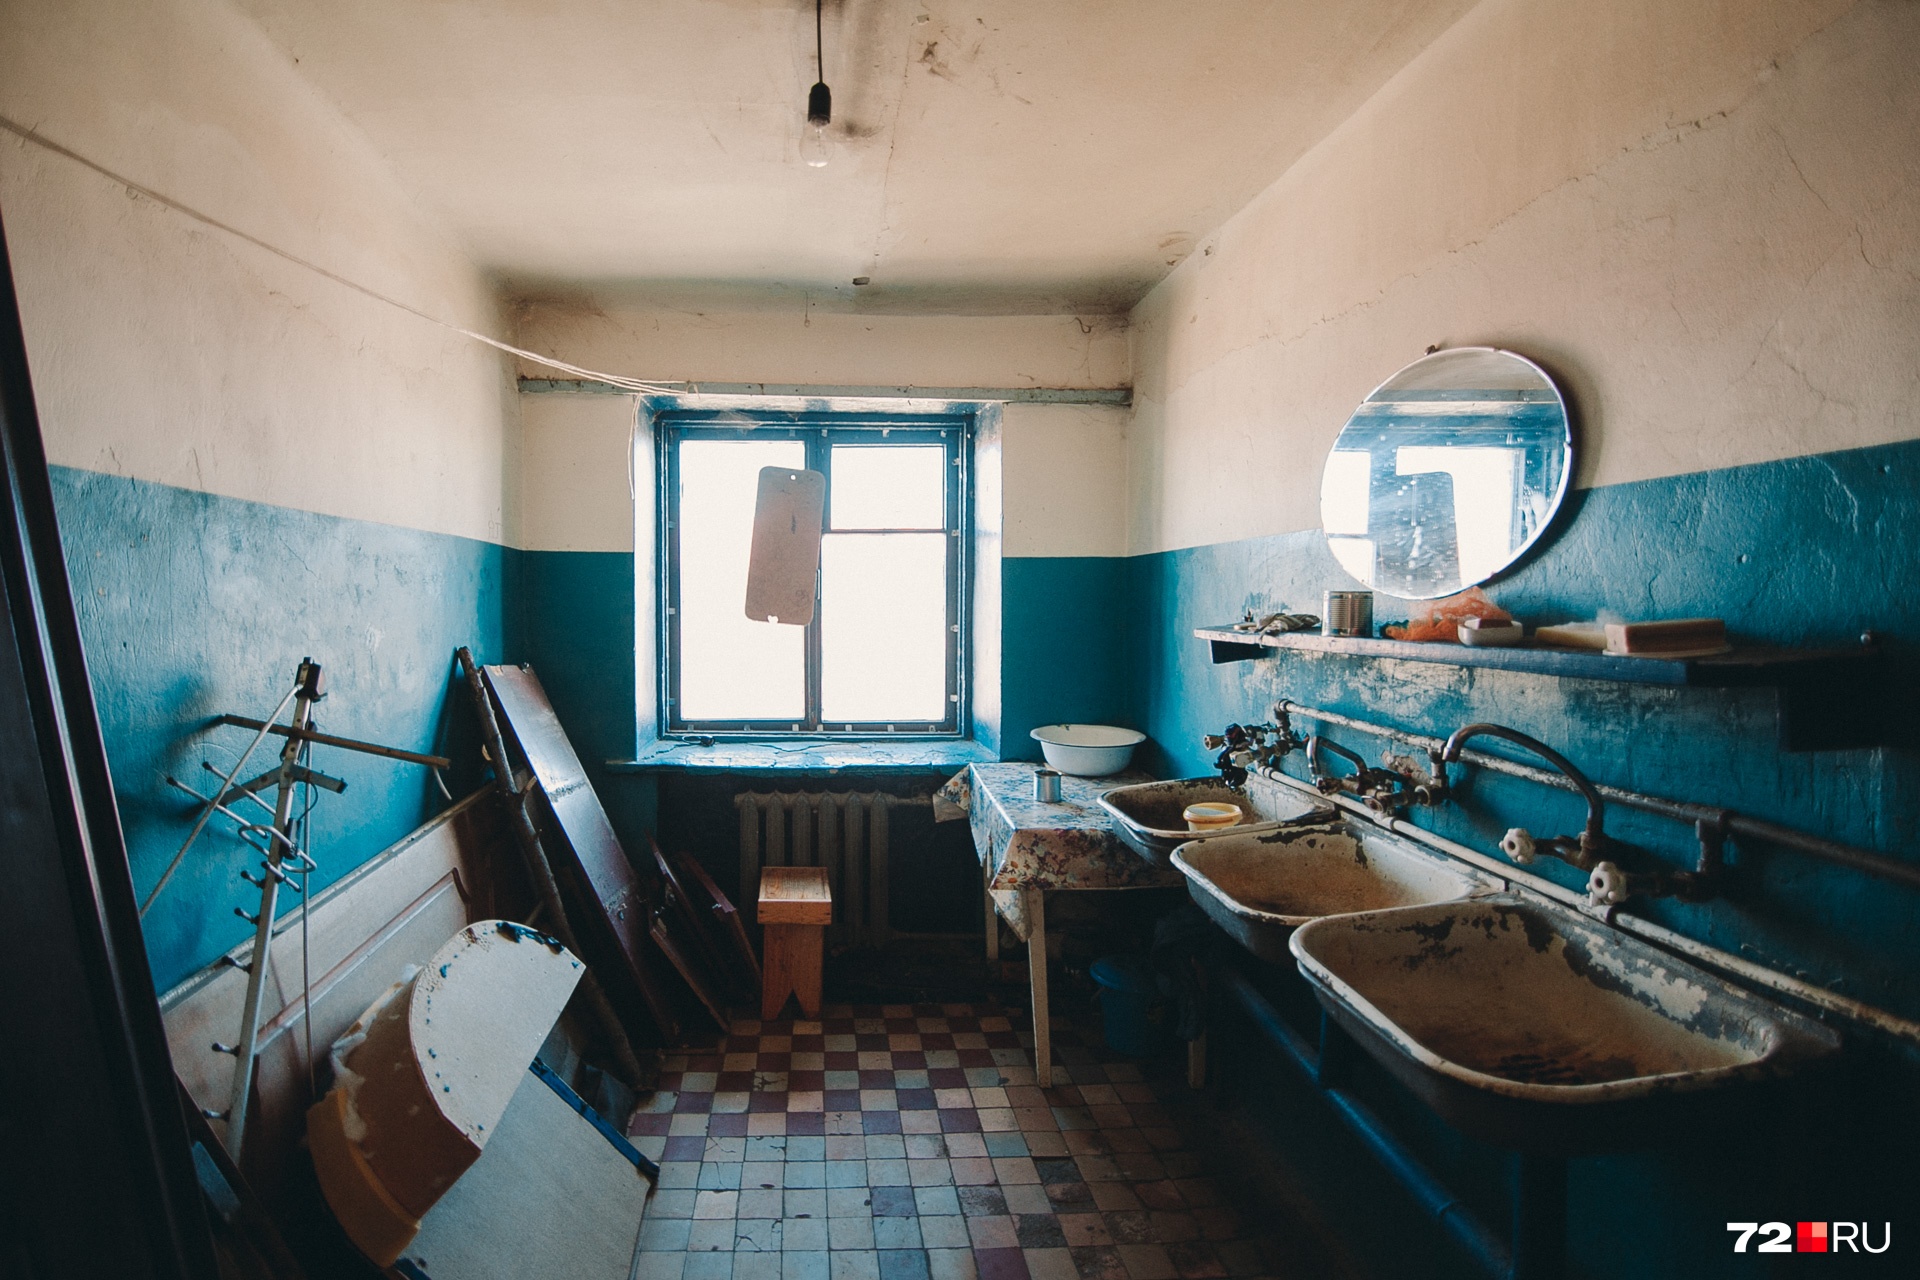 Кухня общежития как и туалеты с ванными комнатами — собственность жильцов